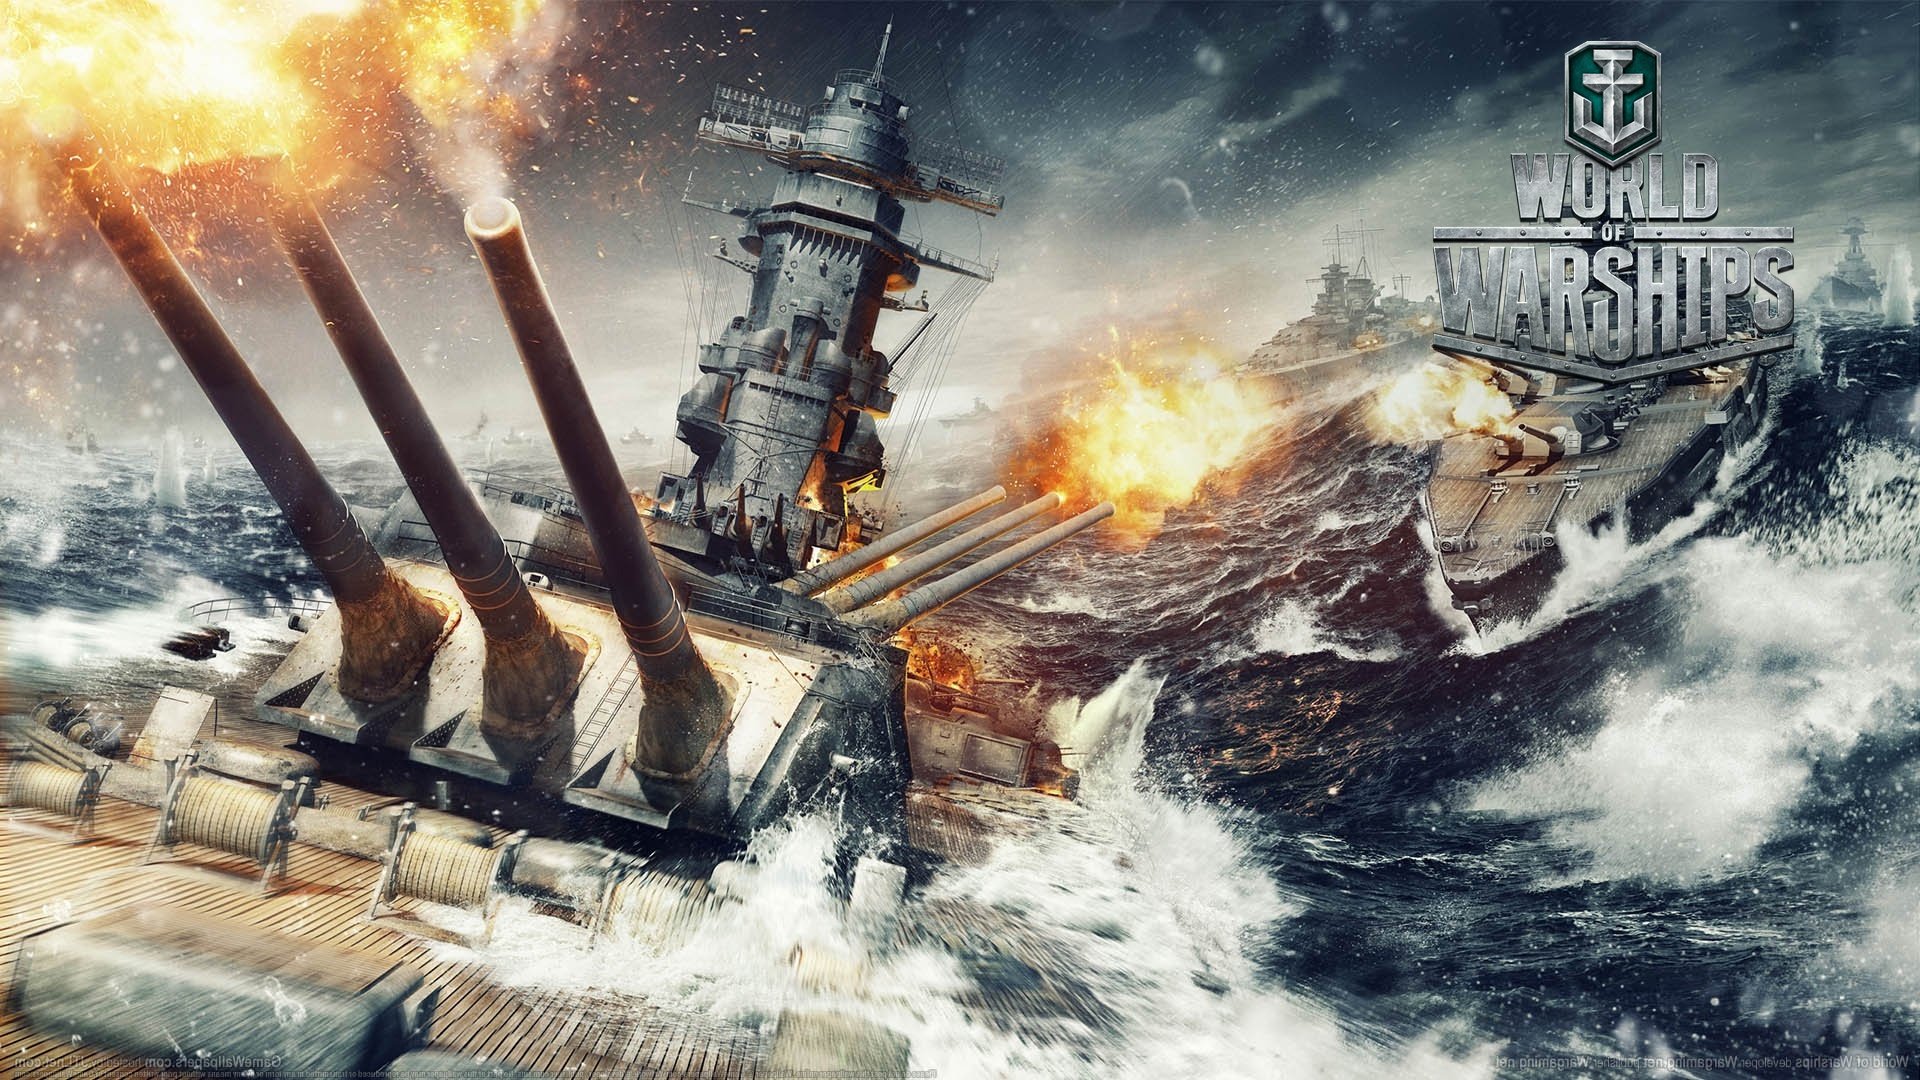 movie battleship online free